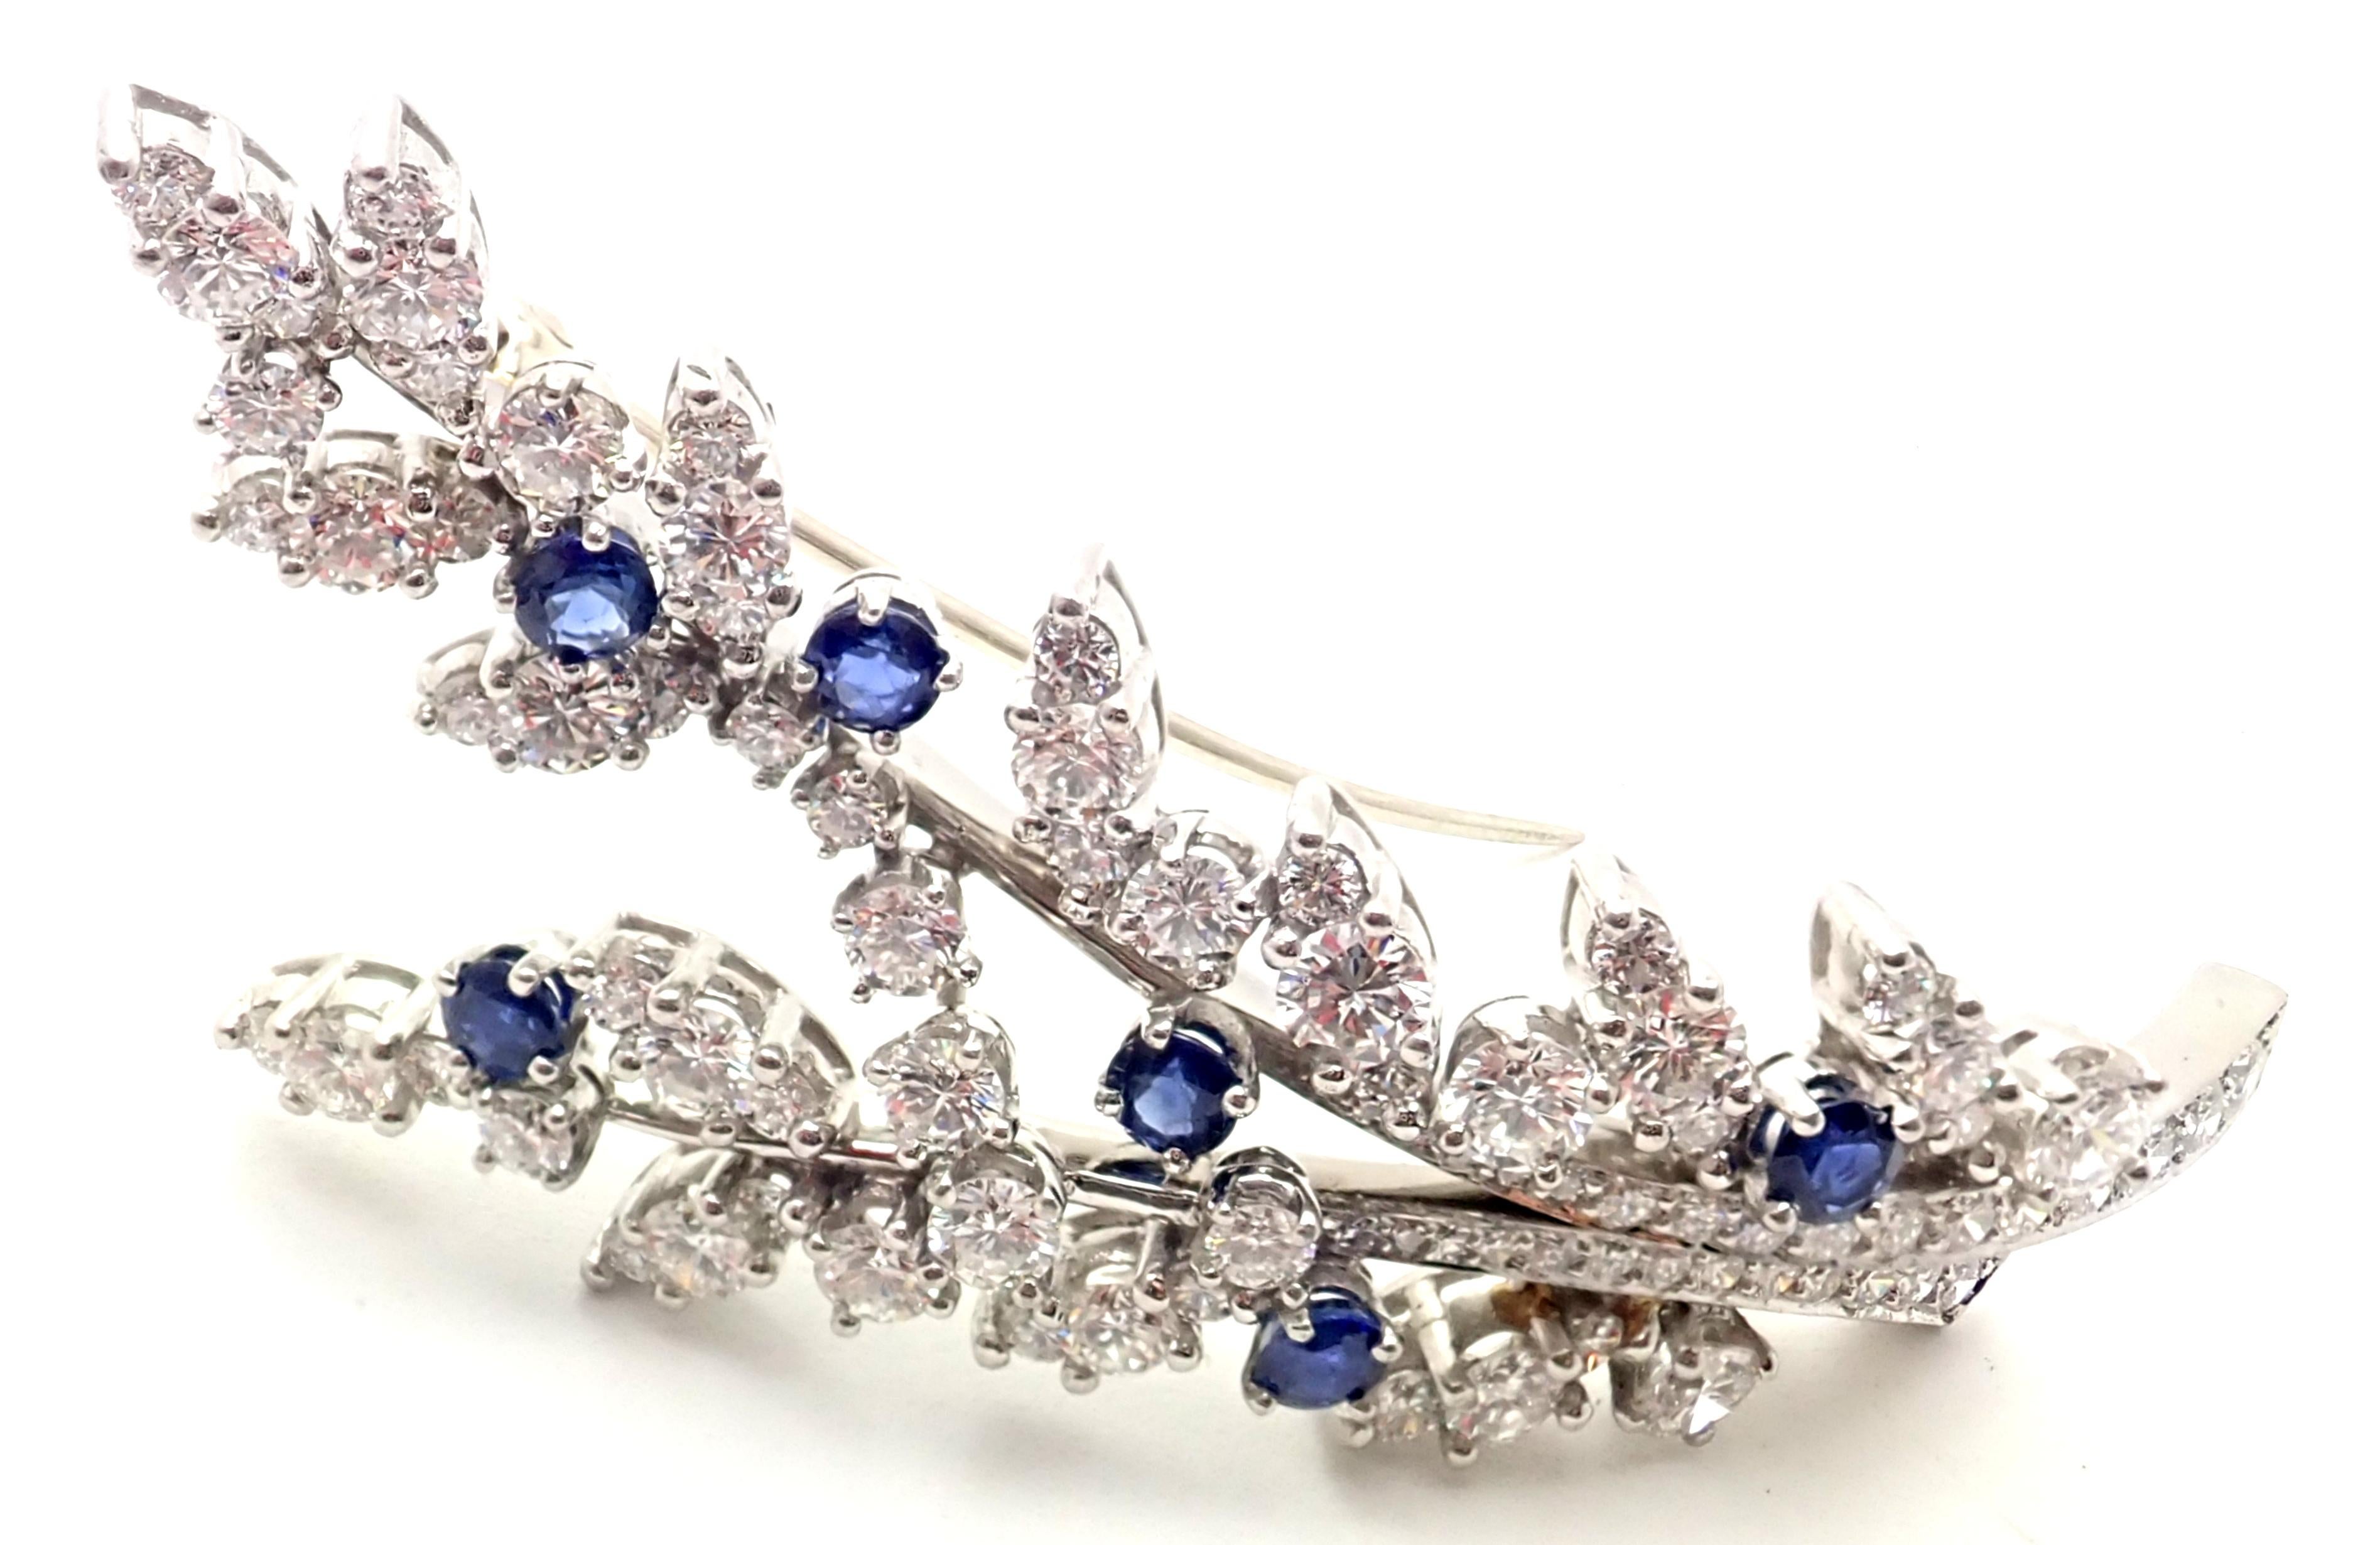 Vintage Platinum Diamond Sapphire Flower Pin Brosche von Tiffany & Co.
Mit 85 runden Diamanten im Brillantschliff, Reinheit VS1, Farbe G, Gesamtgewicht ca. 3,5ct.
6 runde Saphire Gesamtgewicht ca. 1,25ct
Einzelheiten:
Abmessungen: 2 1/4